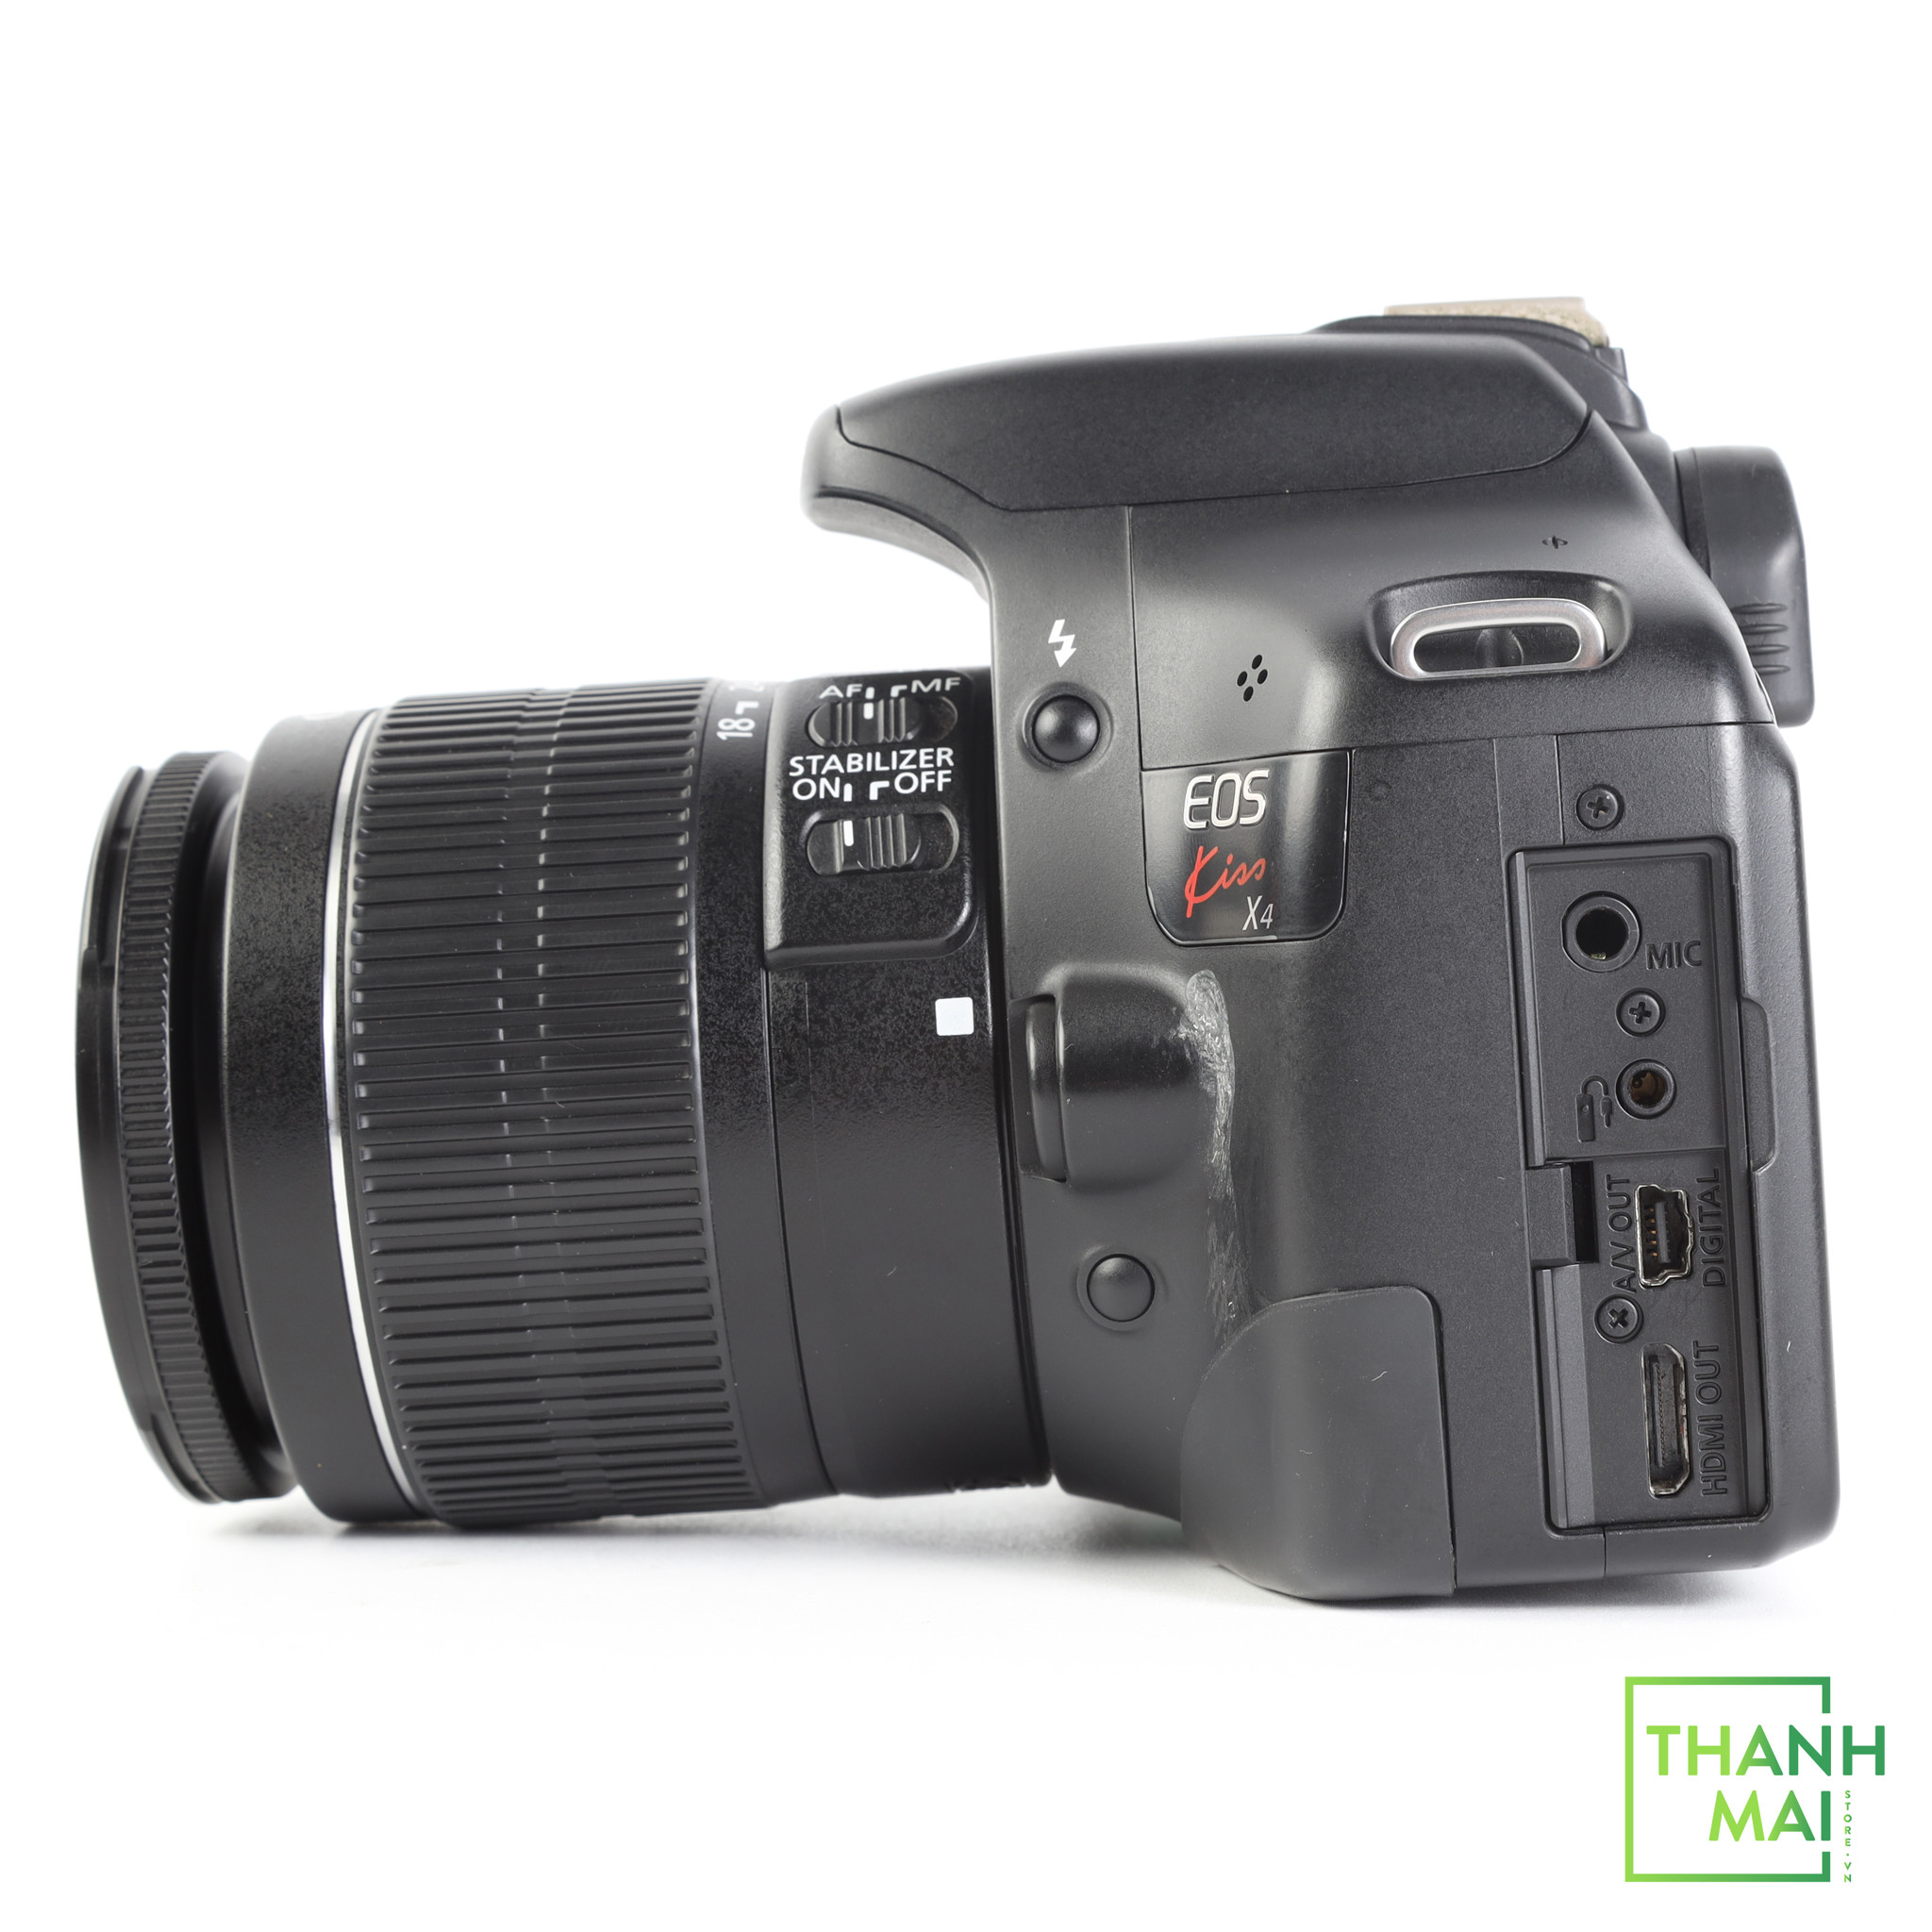 Máy Ảnh Canon EOS Kiss X4 kit 18-55mm F/3.5-5.6 IS II ( 550D 